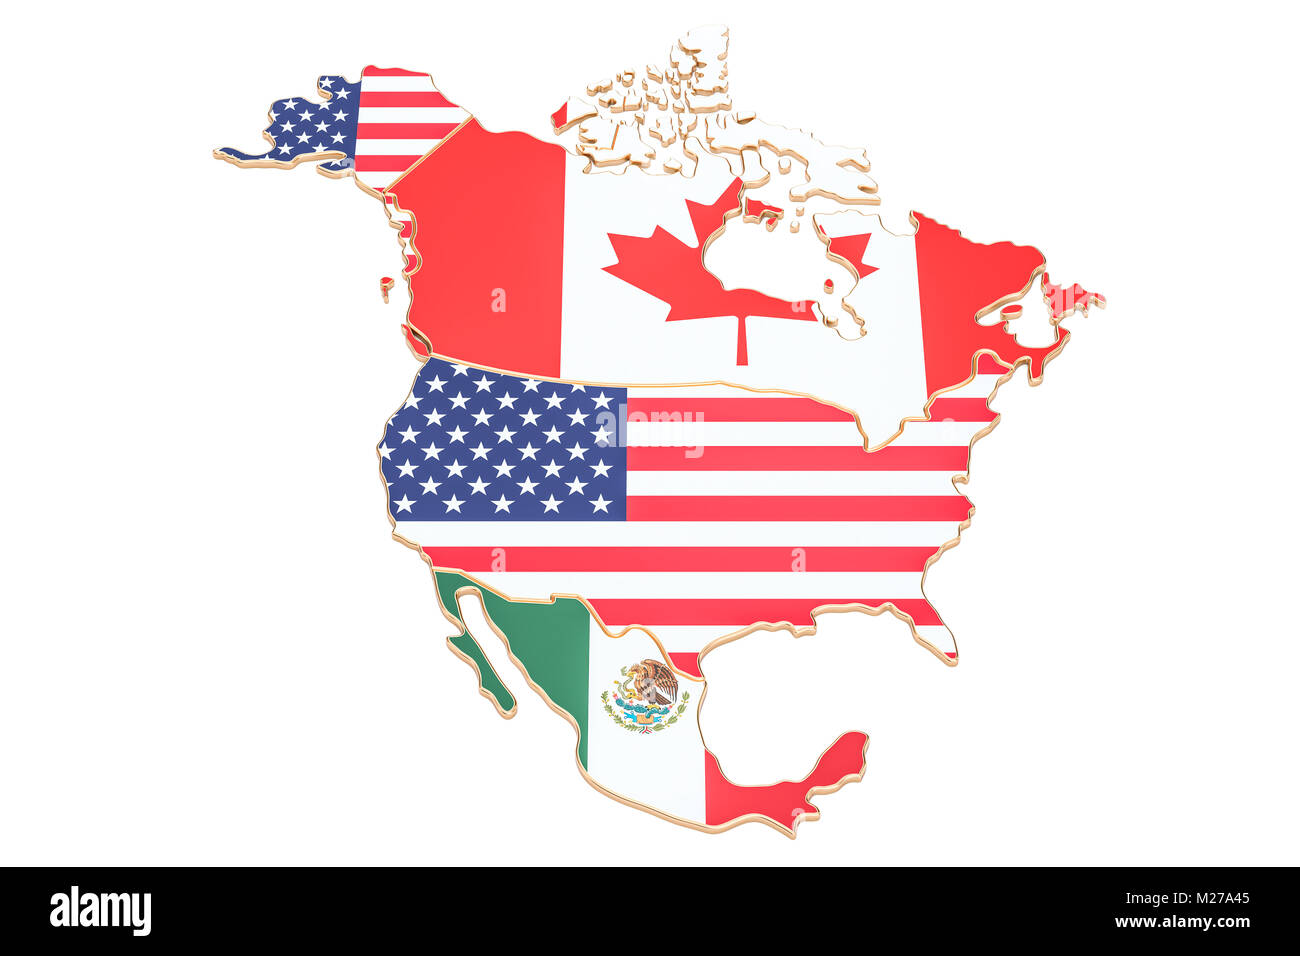 Mappa del nord america con bandiere degli Stati Uniti d'America, il Canada e il Messico. 3D rendering isolati su sfondo bianco Foto Stock